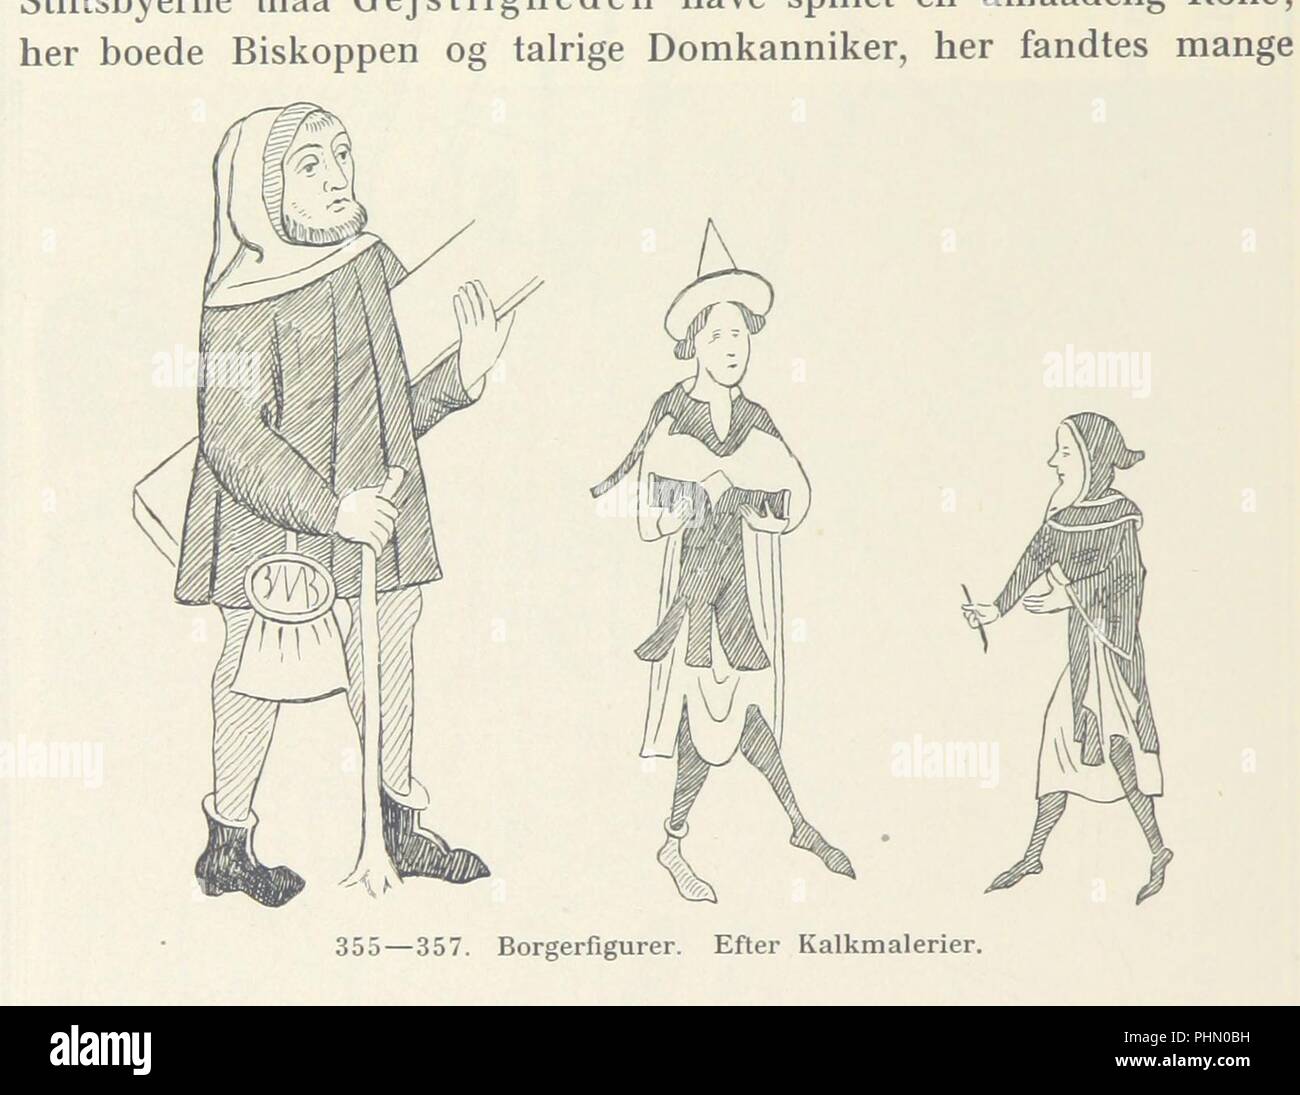 Image  from page 652 of 'Danmarks Riges Historie af J. Steenstrup, Kr. Erslev, A. Heise, V. Mollerup, J. A. Fridericia, E. Holm, A. D. Jørgensen. Historisk illustreret' . Stock Photo